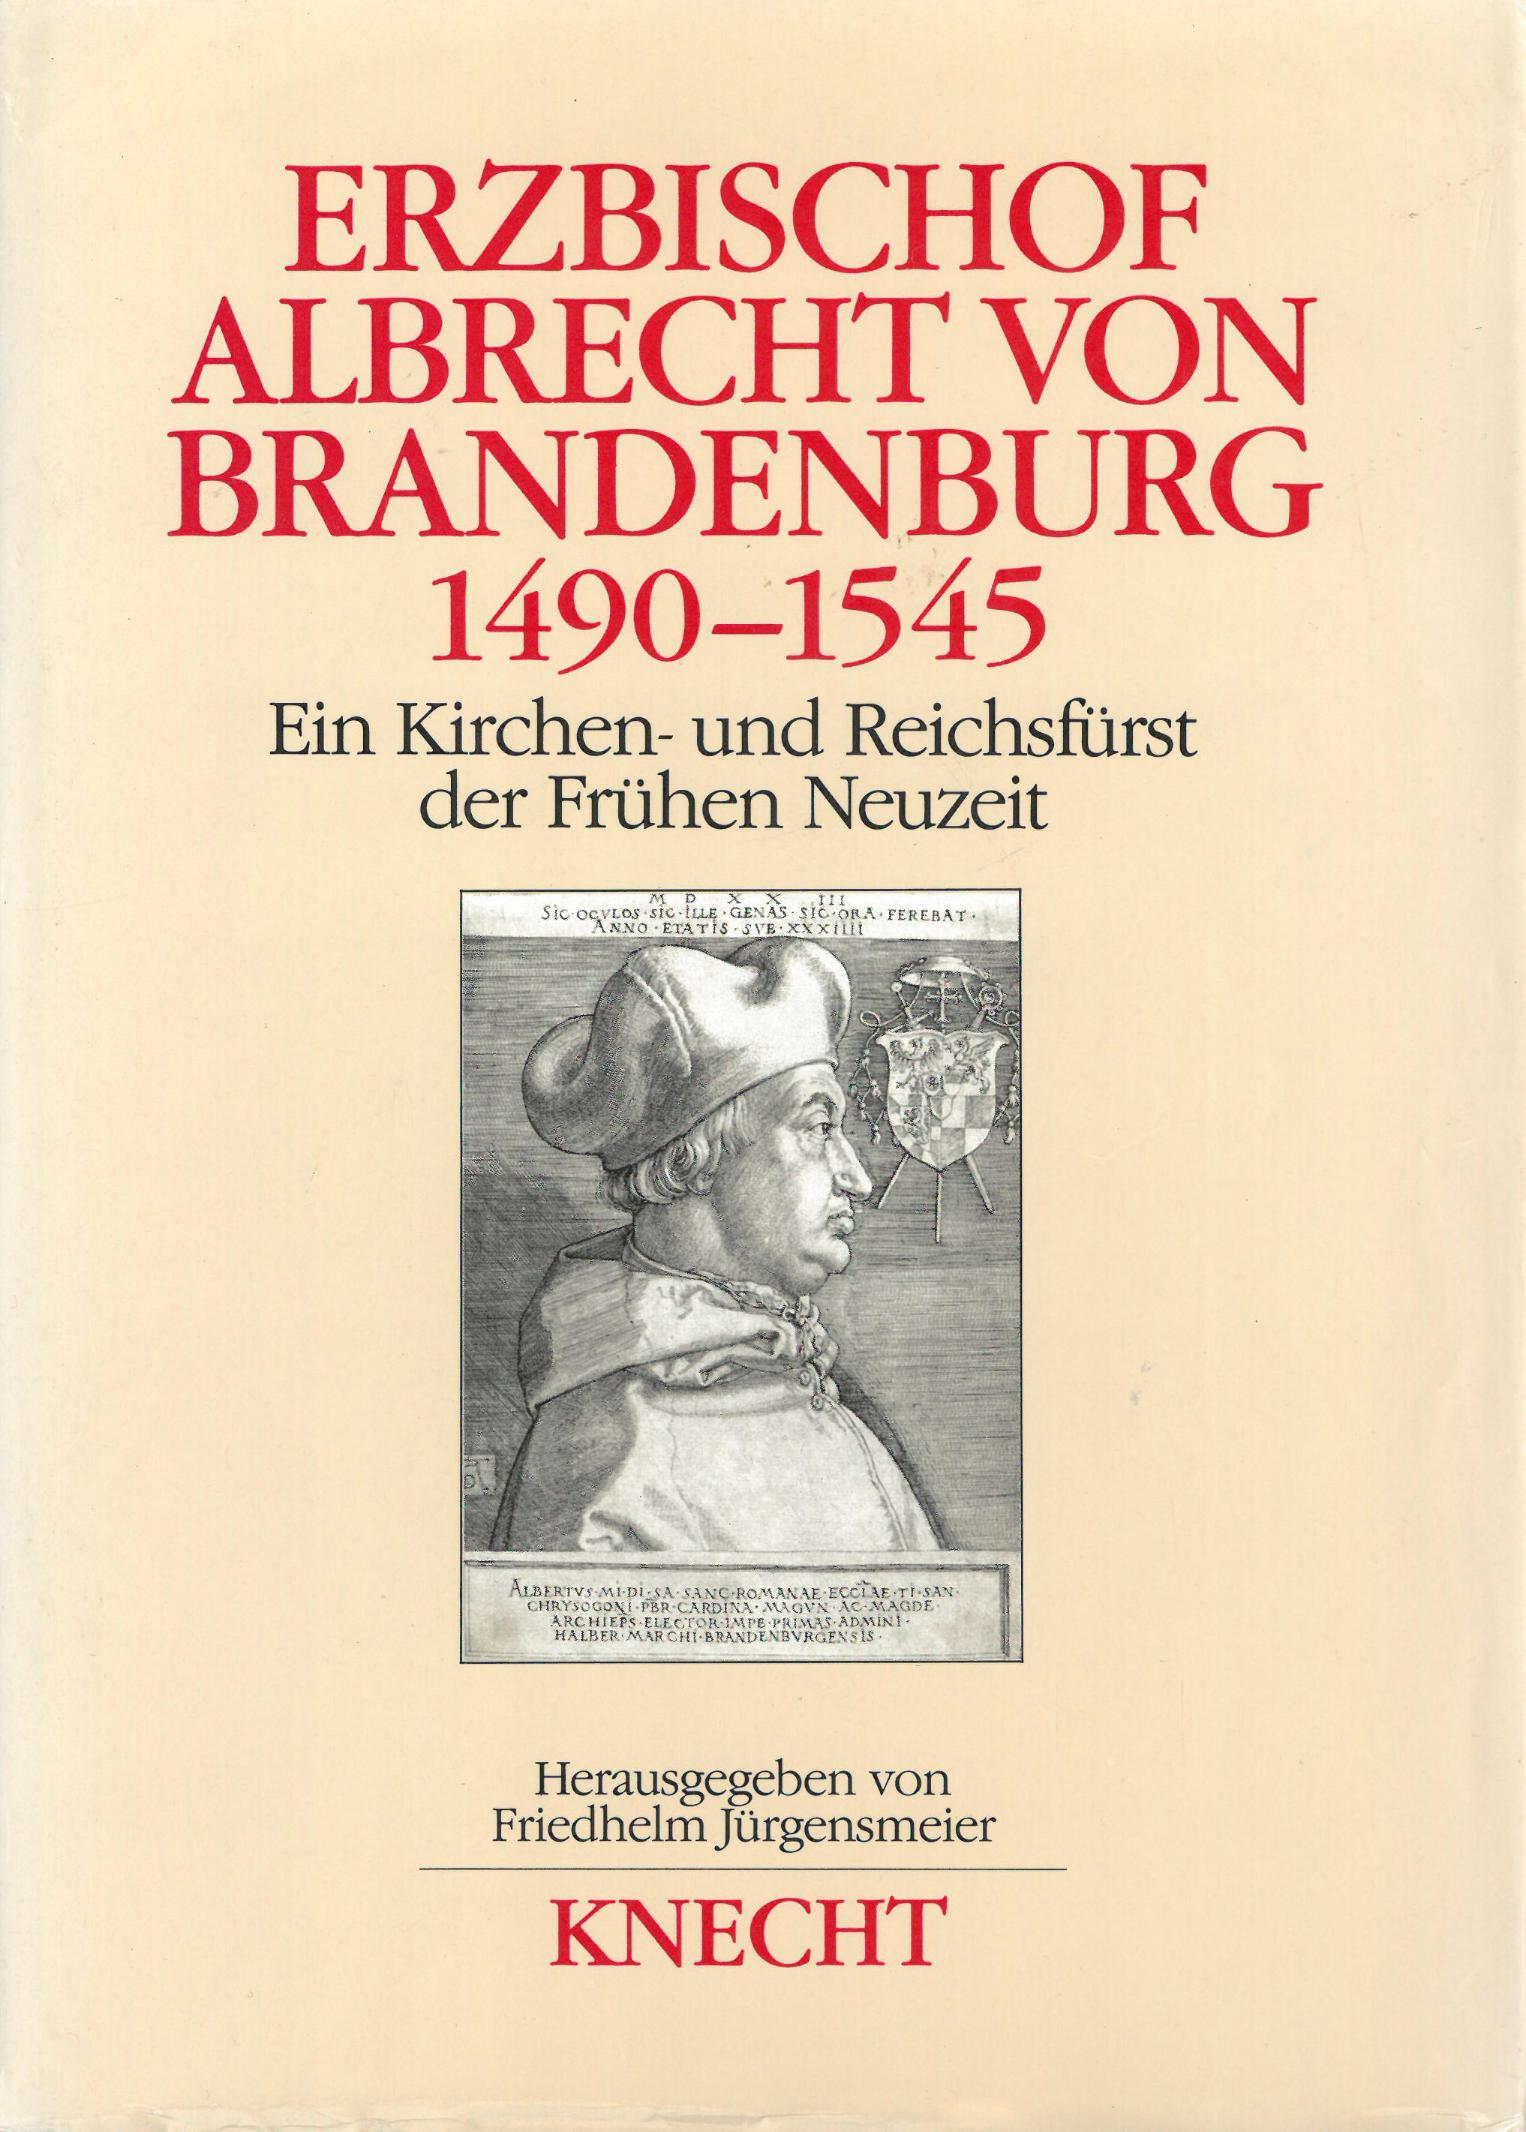 Albrecht (c) Knecht / IMKG